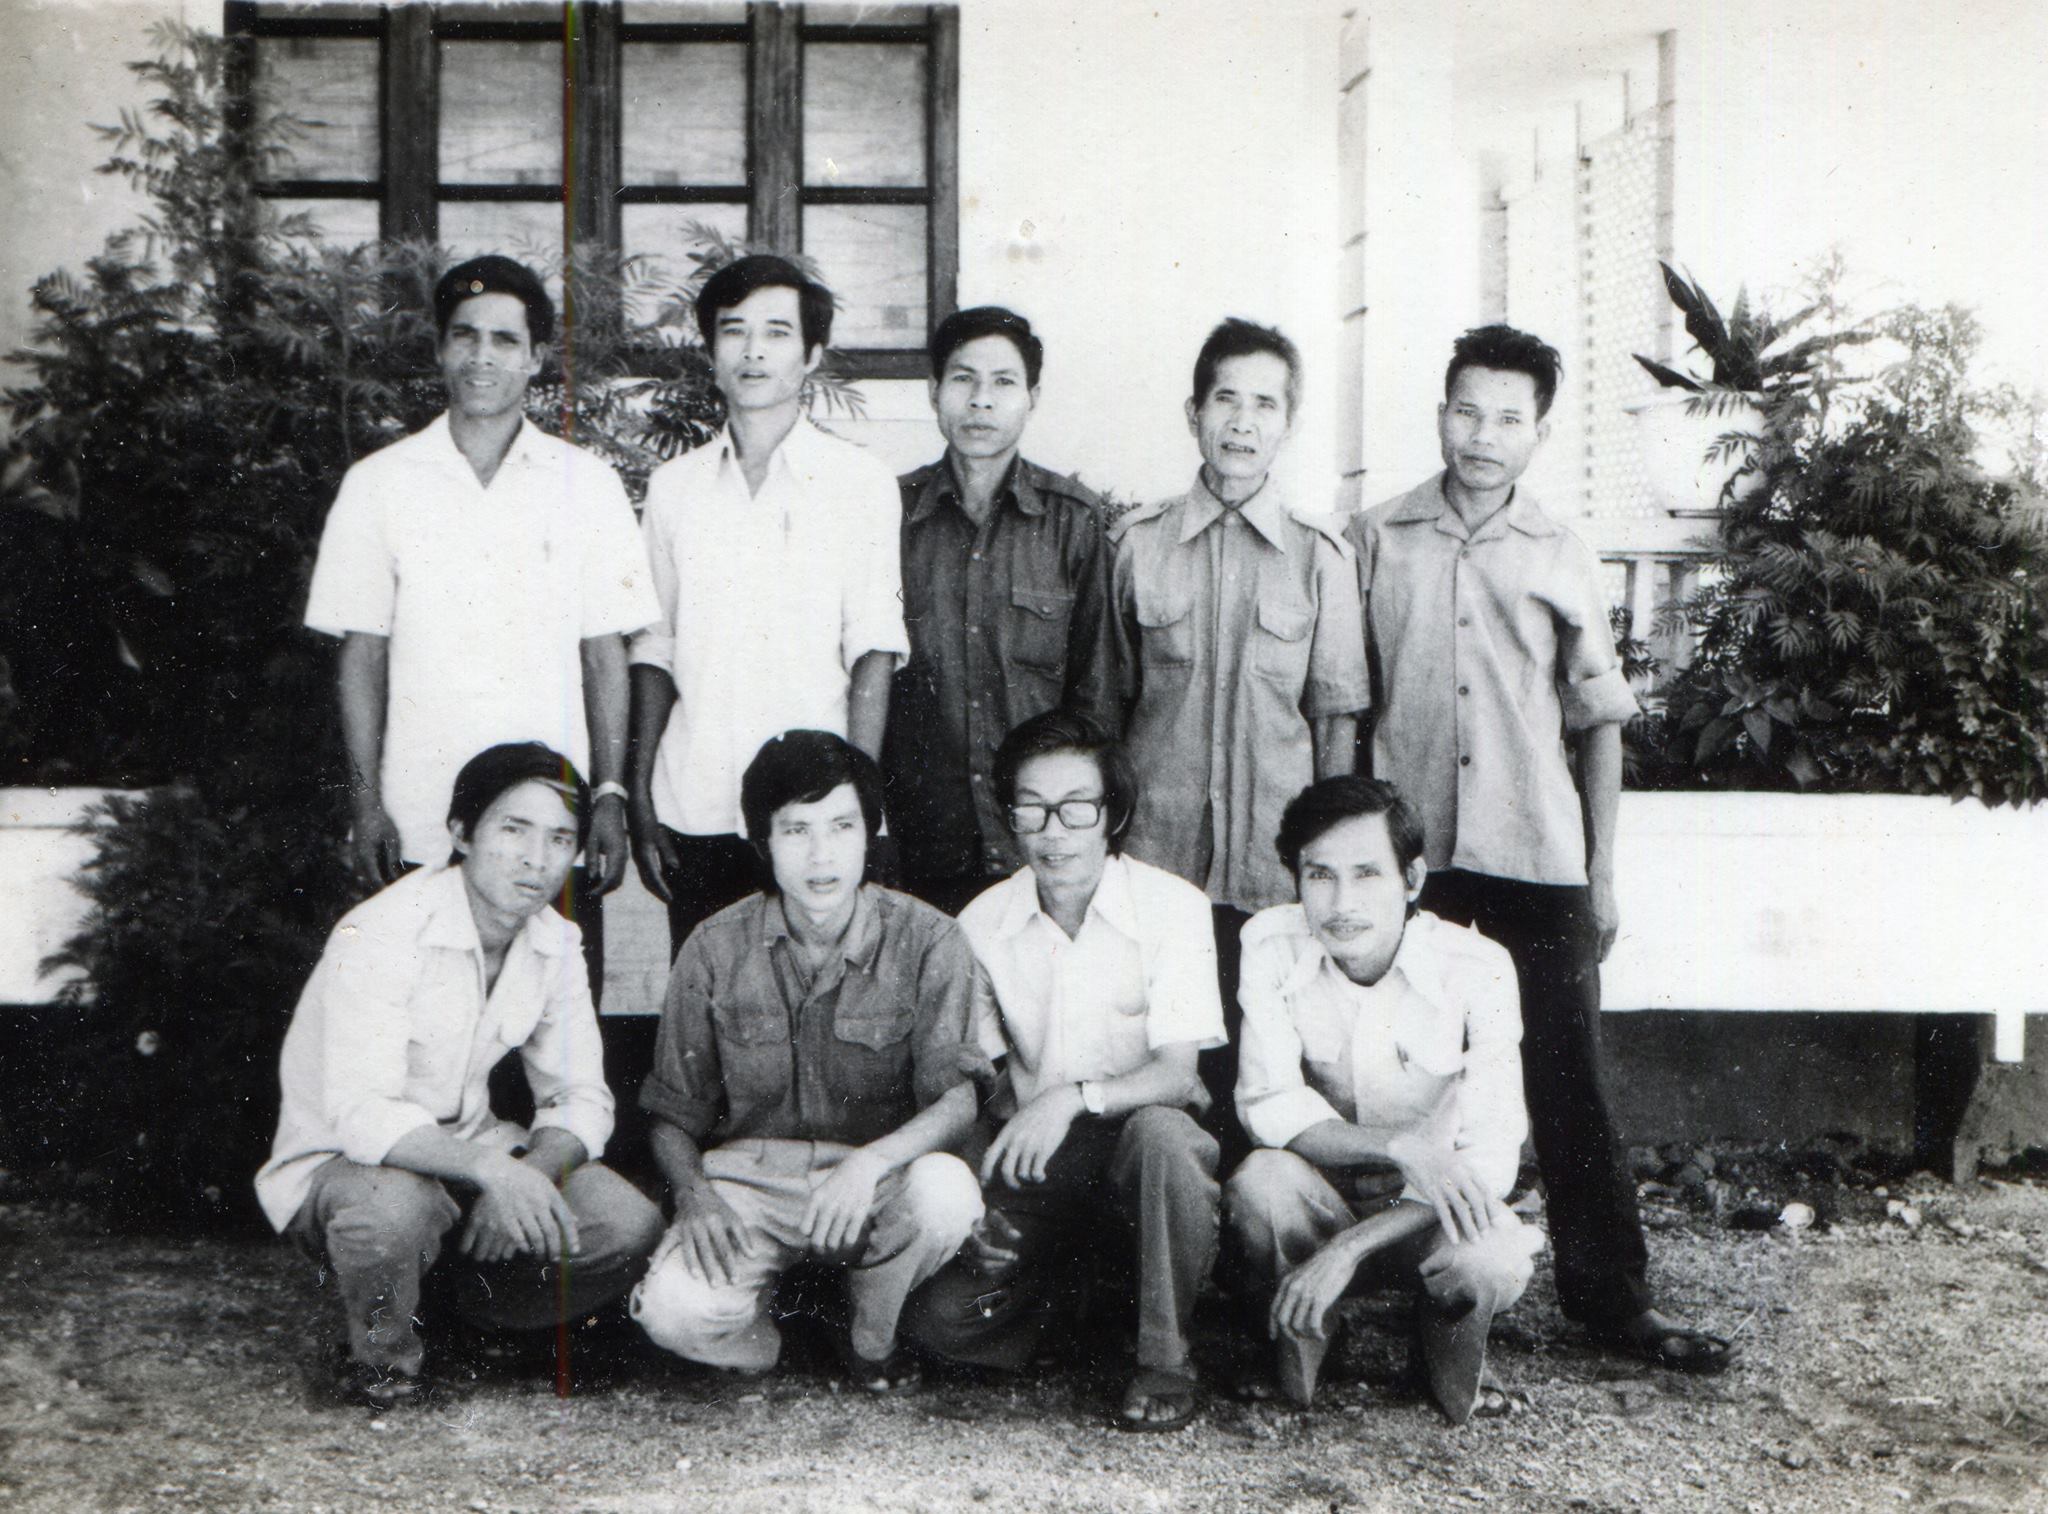 Hàng đứng - một số cộng tác viên người Bru-Vân Kiều; hàng ngồi, từ trái qua - Kiểu, tác giả, thầy Tài, thầy Lễ. Chụp tại Khe Sanh.jpg